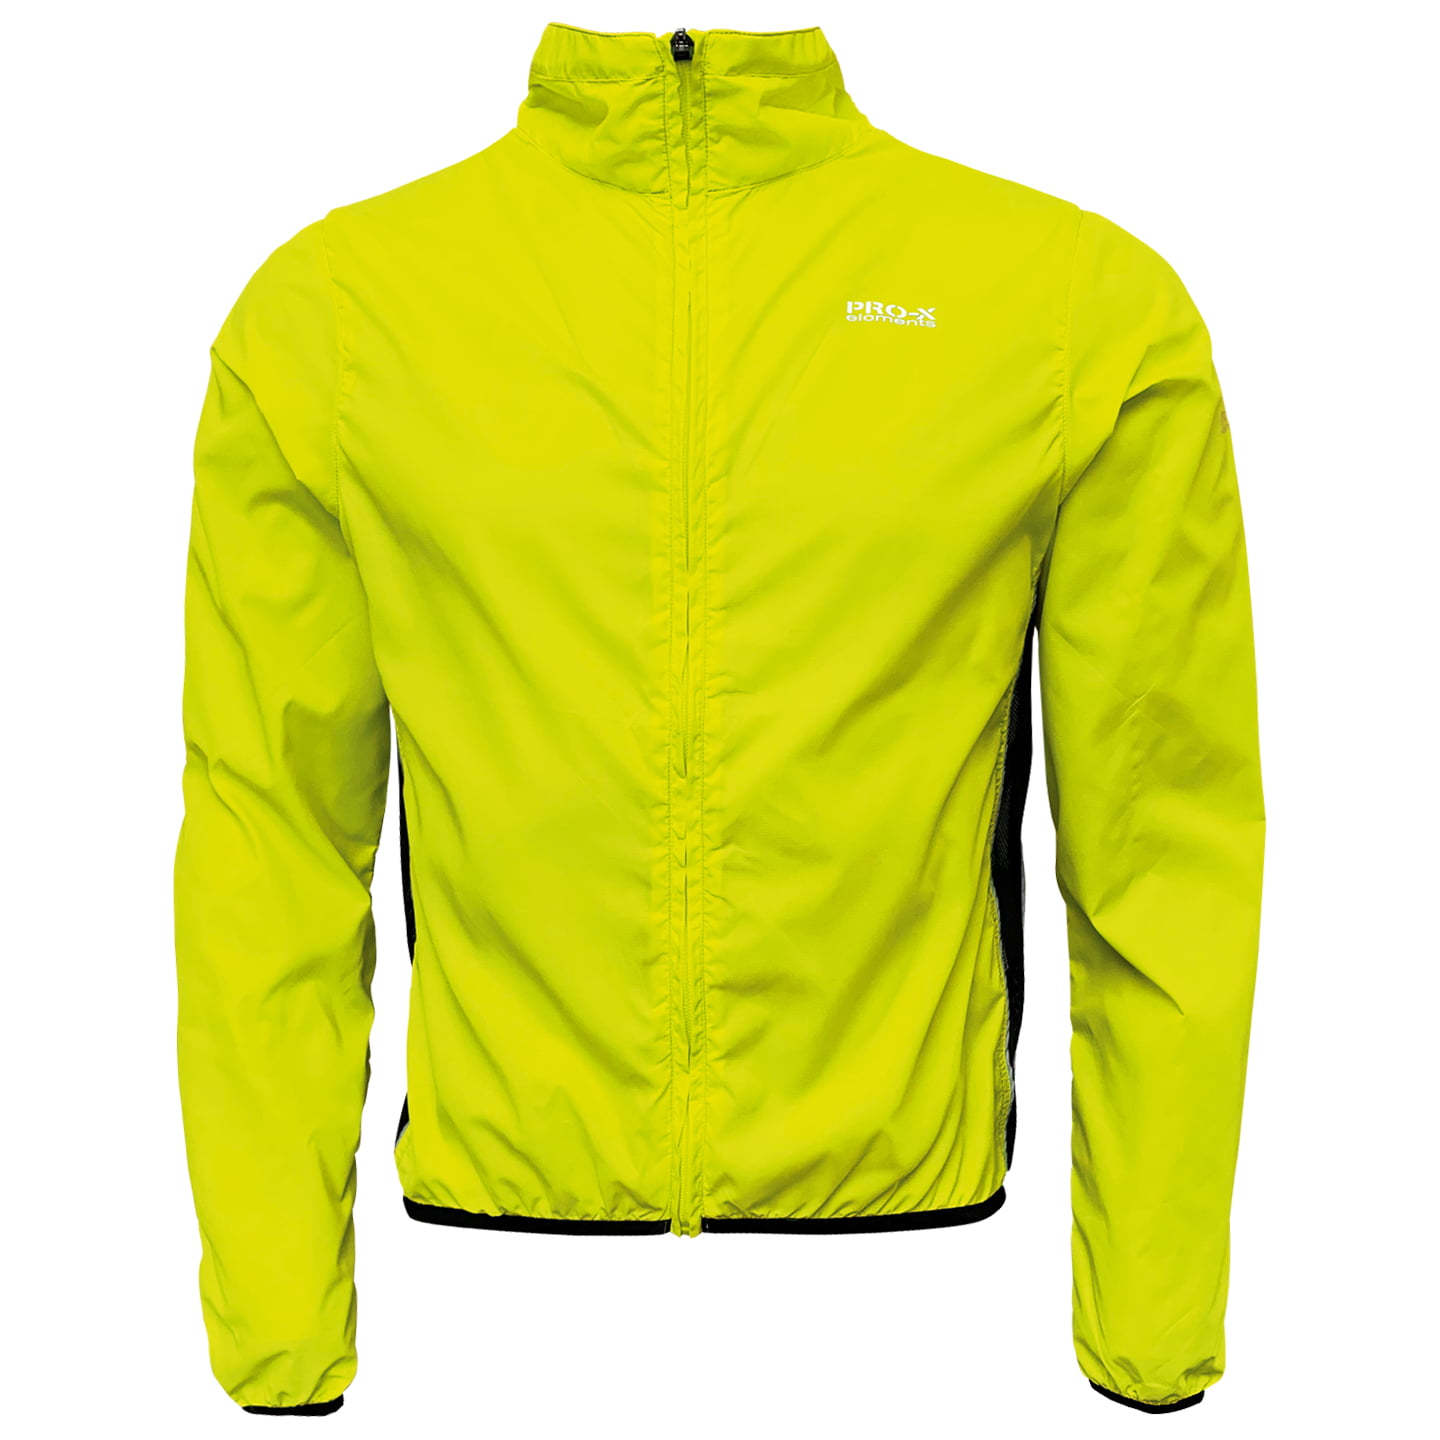 PRO-X Wind Jacket, for men, size XL, Bike jacket, Cycle gear